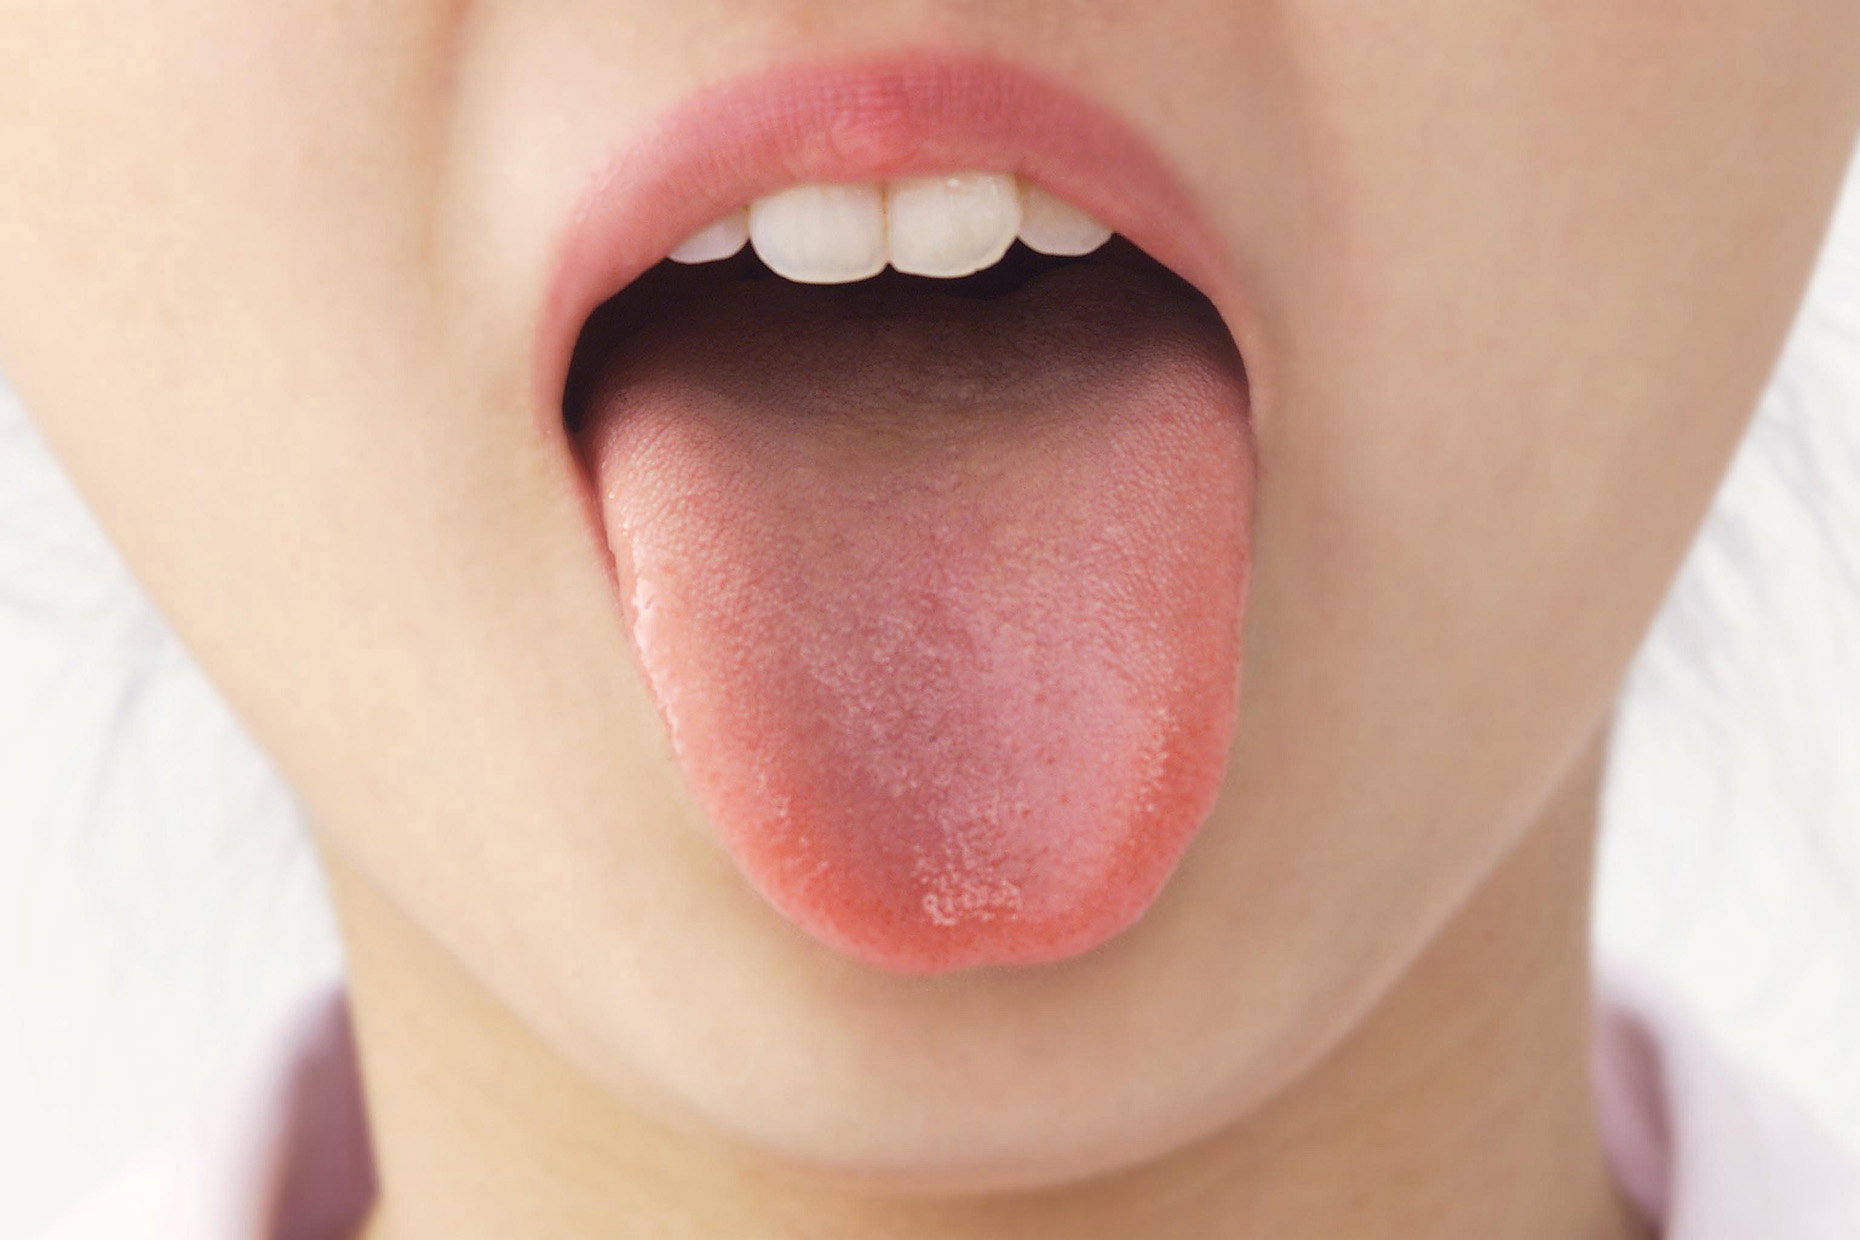 正常舌头根部照片,正常人的舌头根部照片 - 伤感说说吧